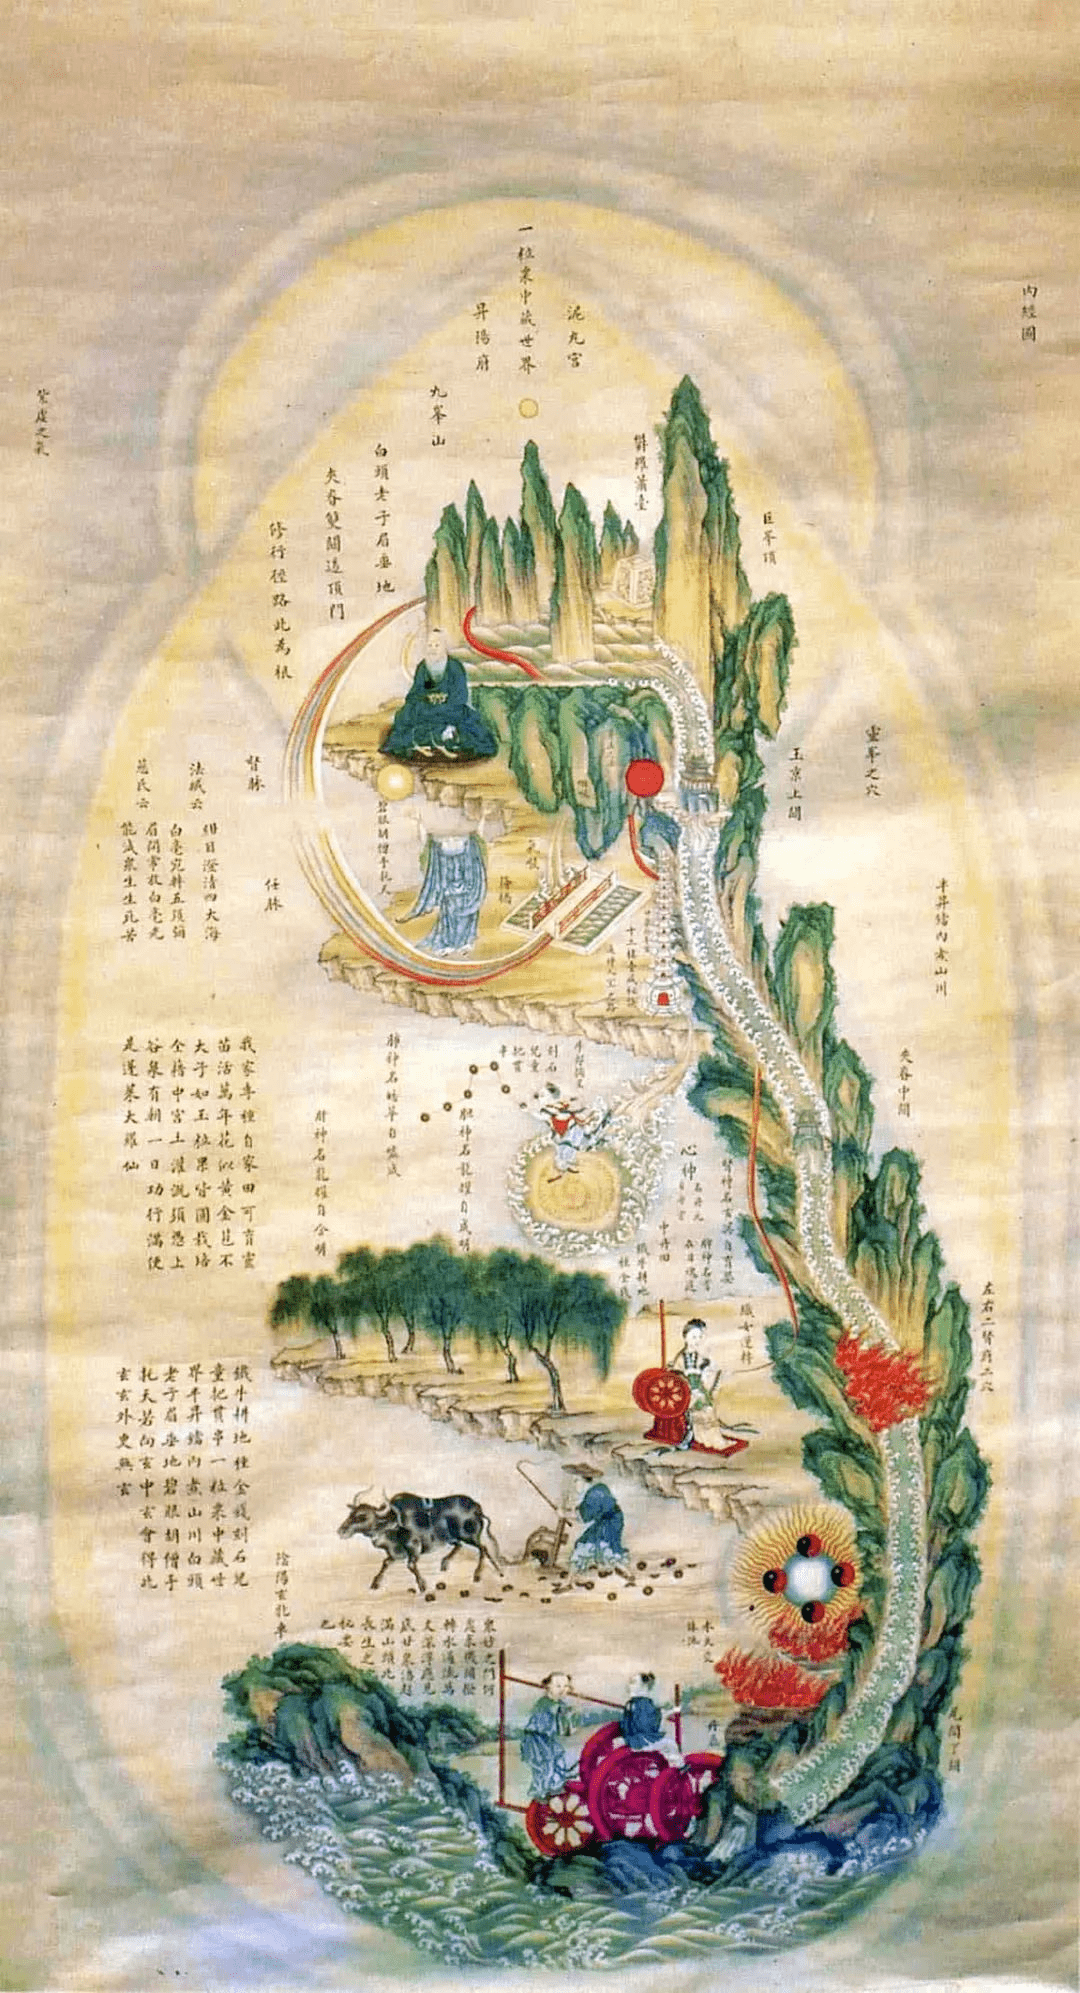 Nei Gong – Daoist Internal Arts